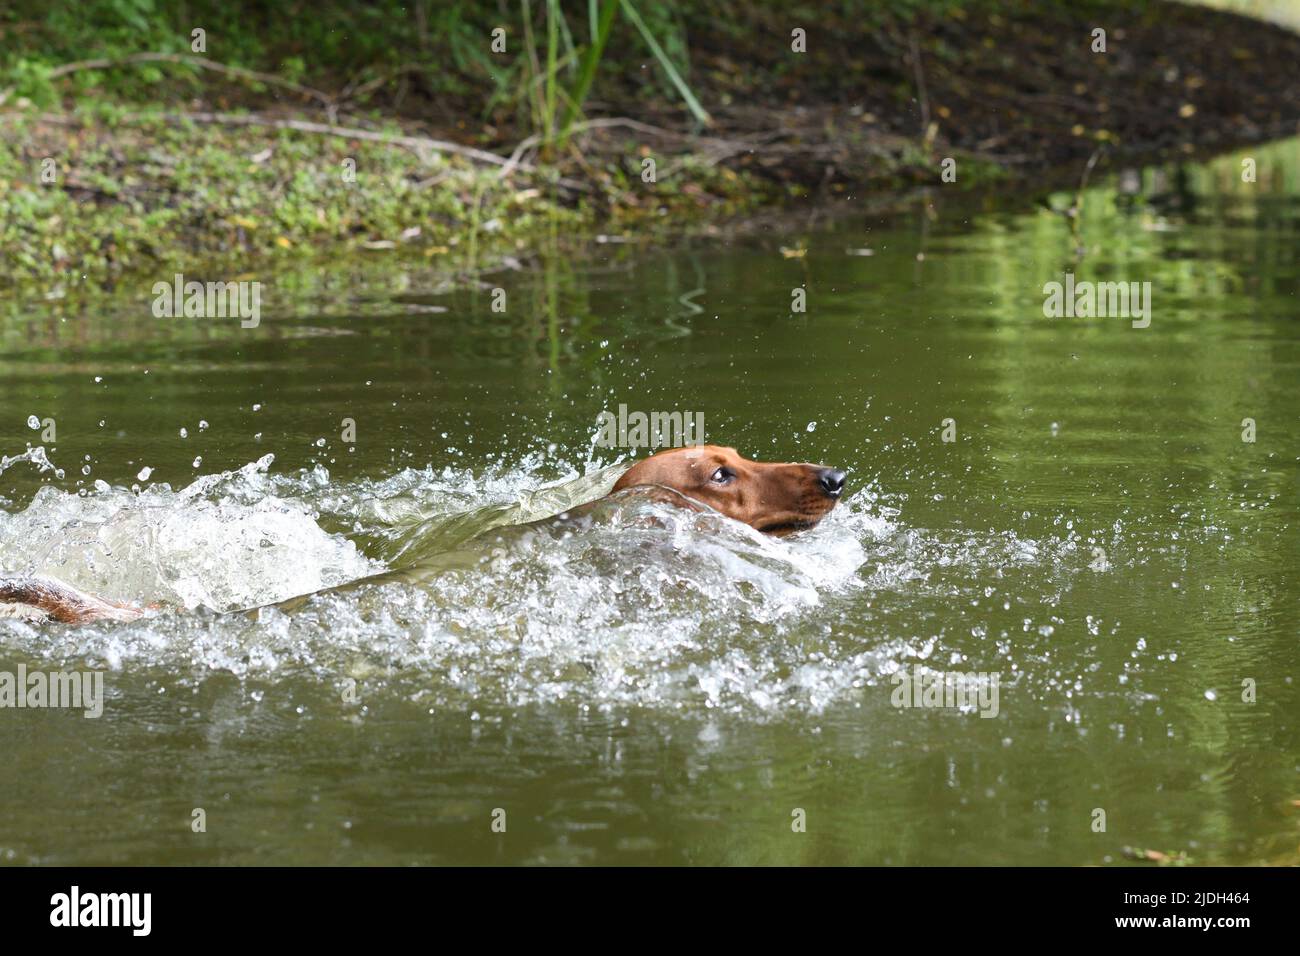 Kurzhaariger Dachshund, kurzhaariger Wursthund, Haushund (Canis lupus f. familiaris), Baden im Teich, Deutschland, Nordrhein-Westfalen Stockfoto